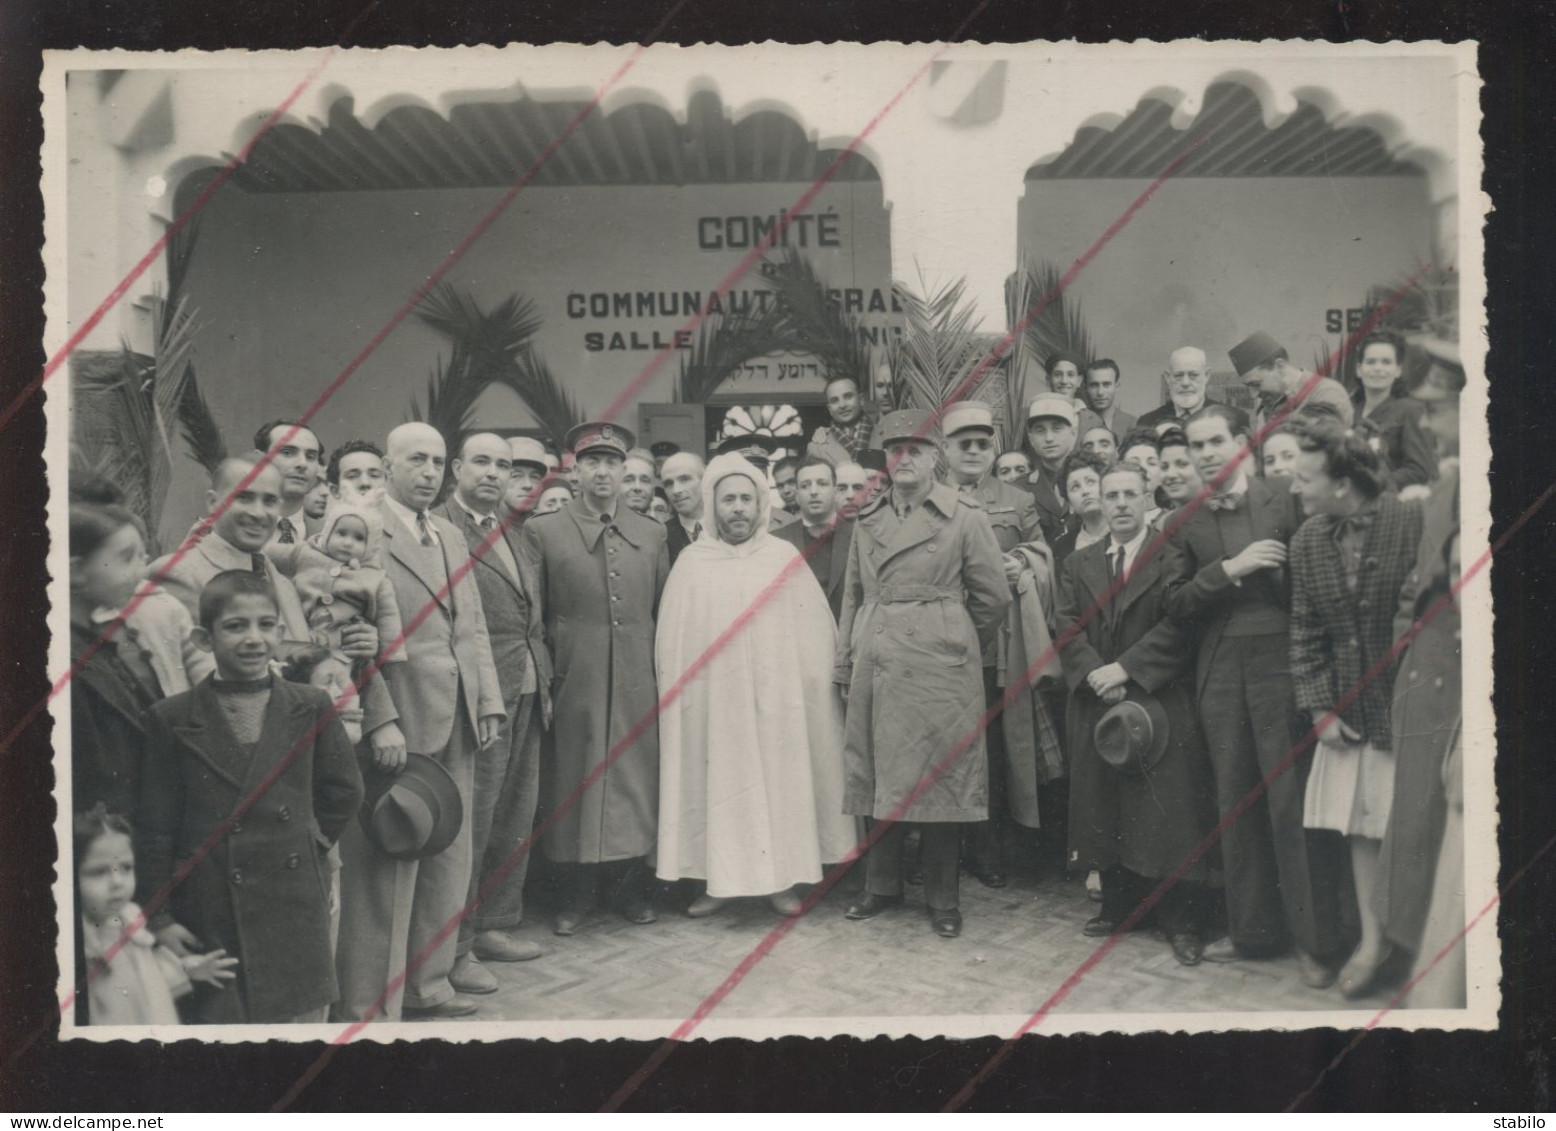 MAROC - FES - JUDAISME - VISITE DES AUTORITES FRANCAISES ET MAROCAINES A LA COMMUNAUTE ISRAELITE - 1944 - FT 17.5 X 12 C - Lieux